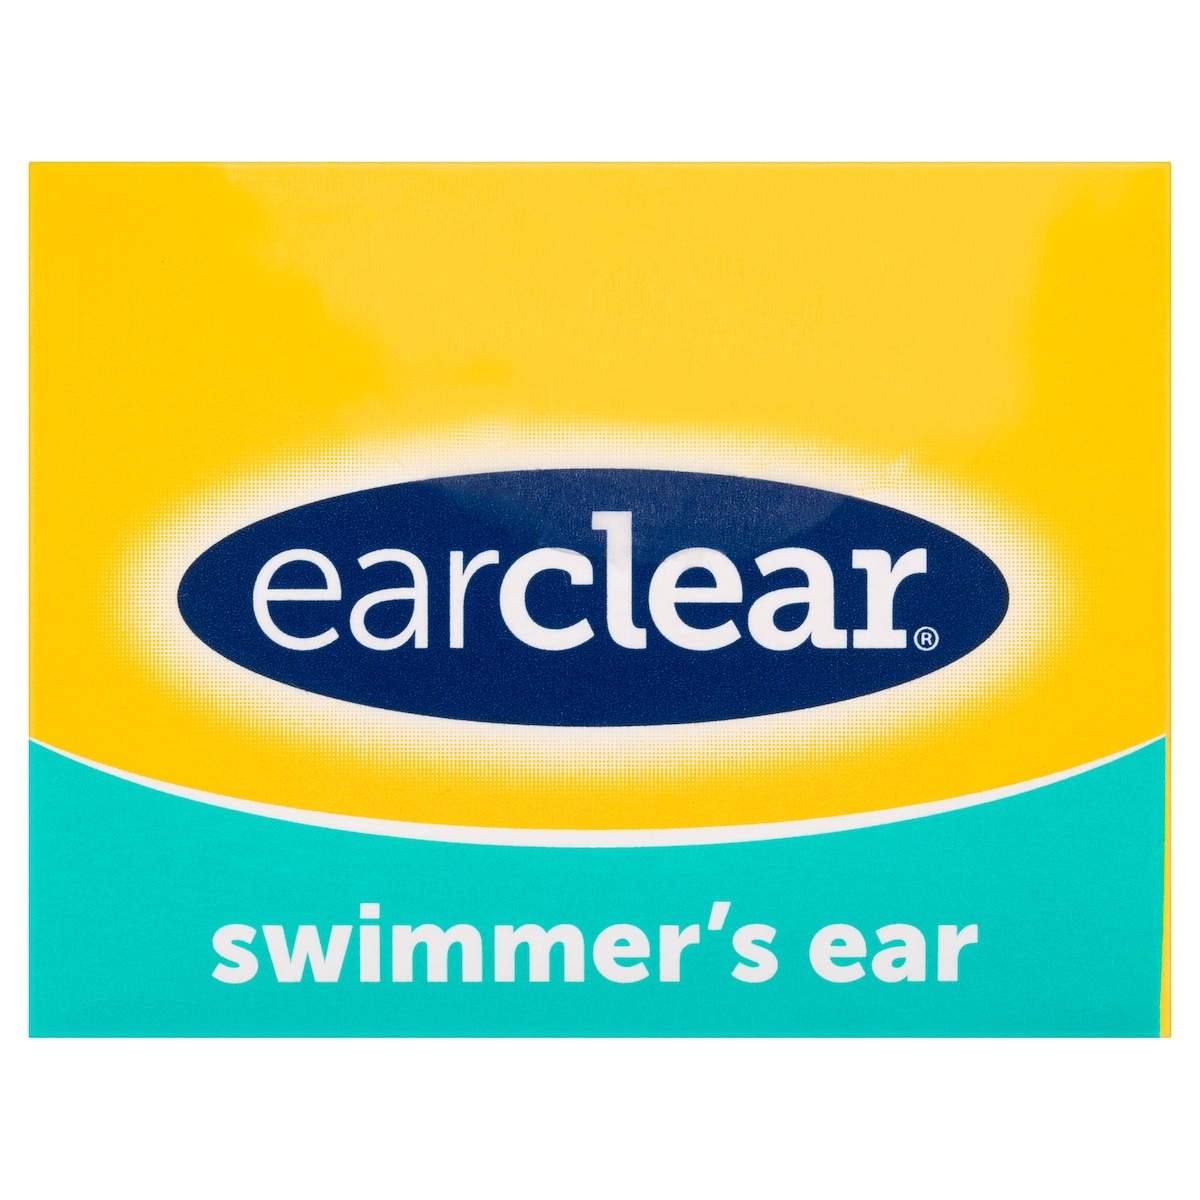 Earclear Ear Drops For Swimmers Ear 40Ml